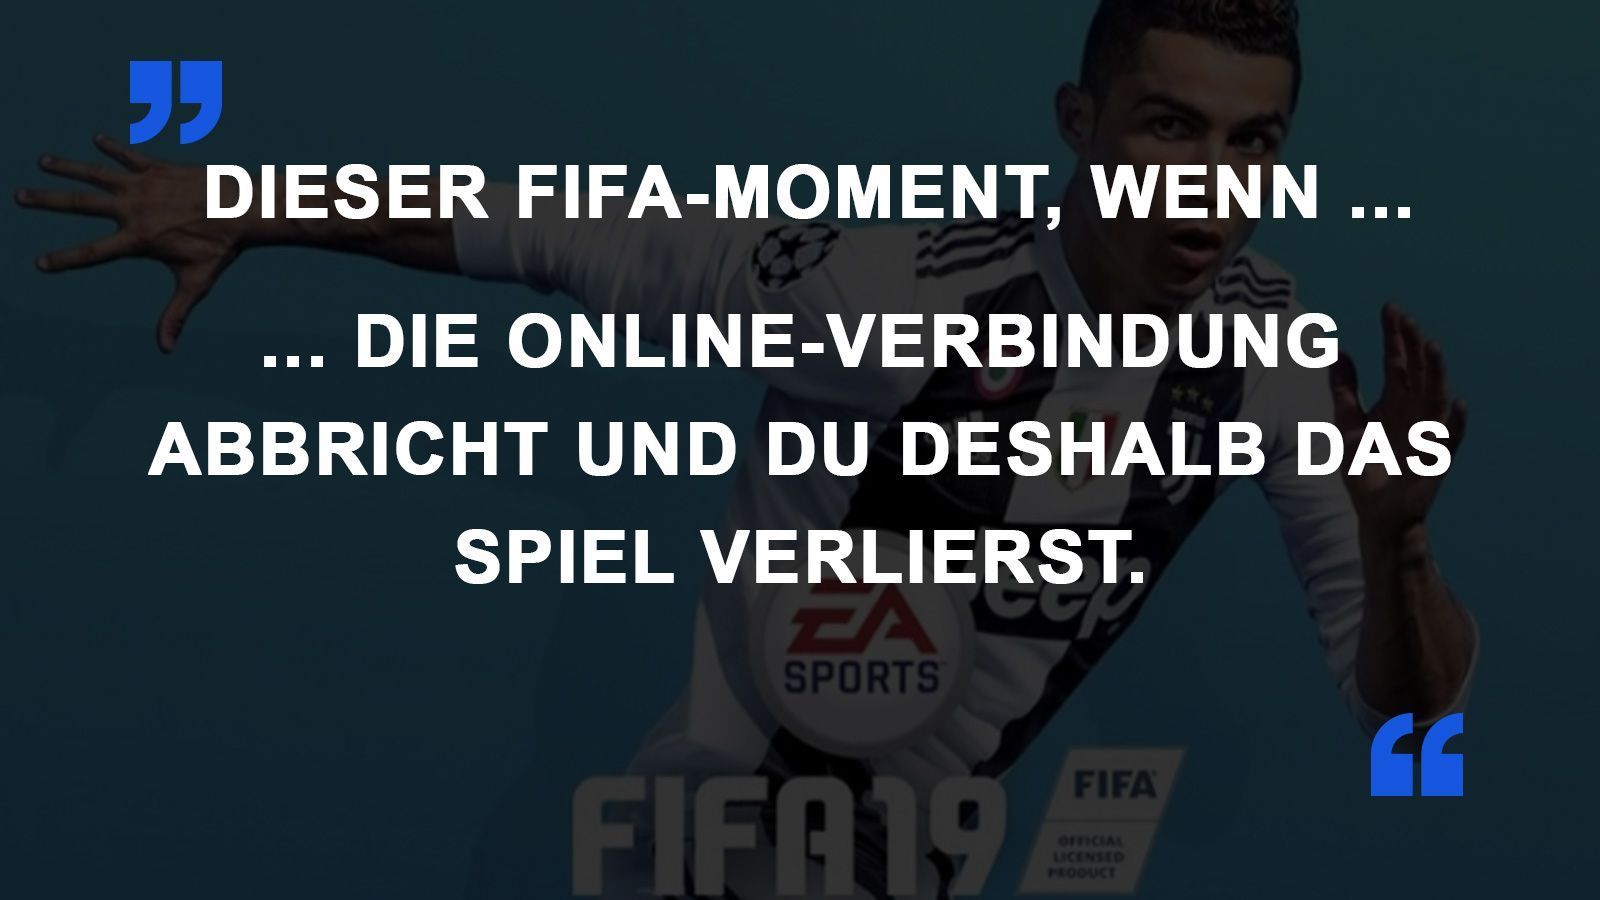 
                <strong>FIFA Momente Verbindung</strong><br>
                
              